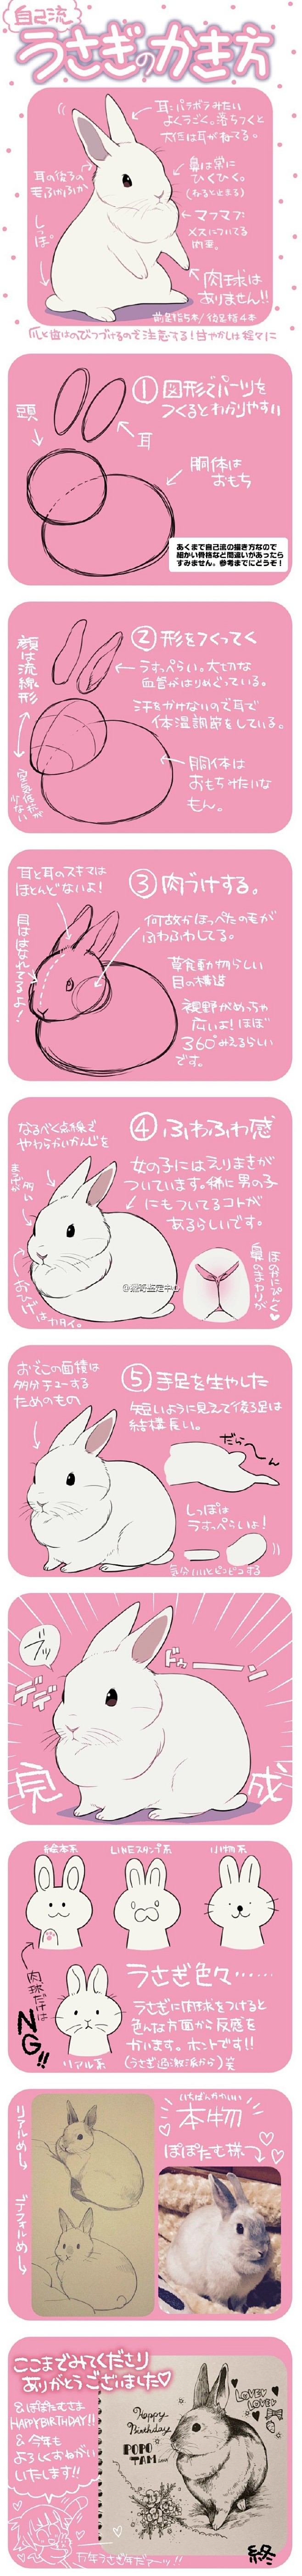 兔兔即为正义——井口病院(id95027...